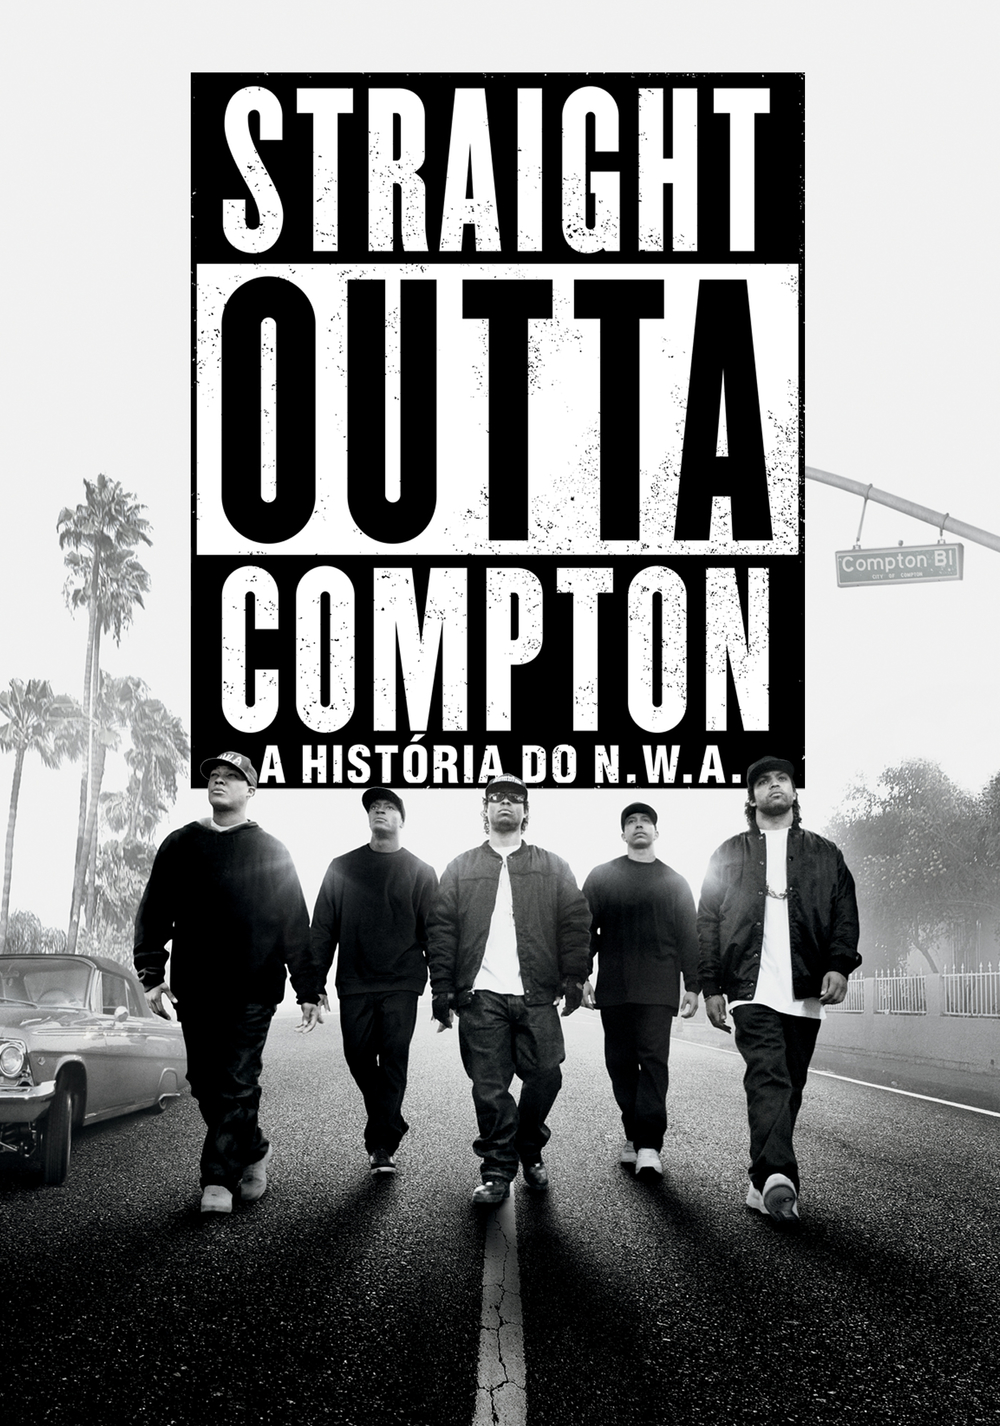 Straight Outta Compton Picture